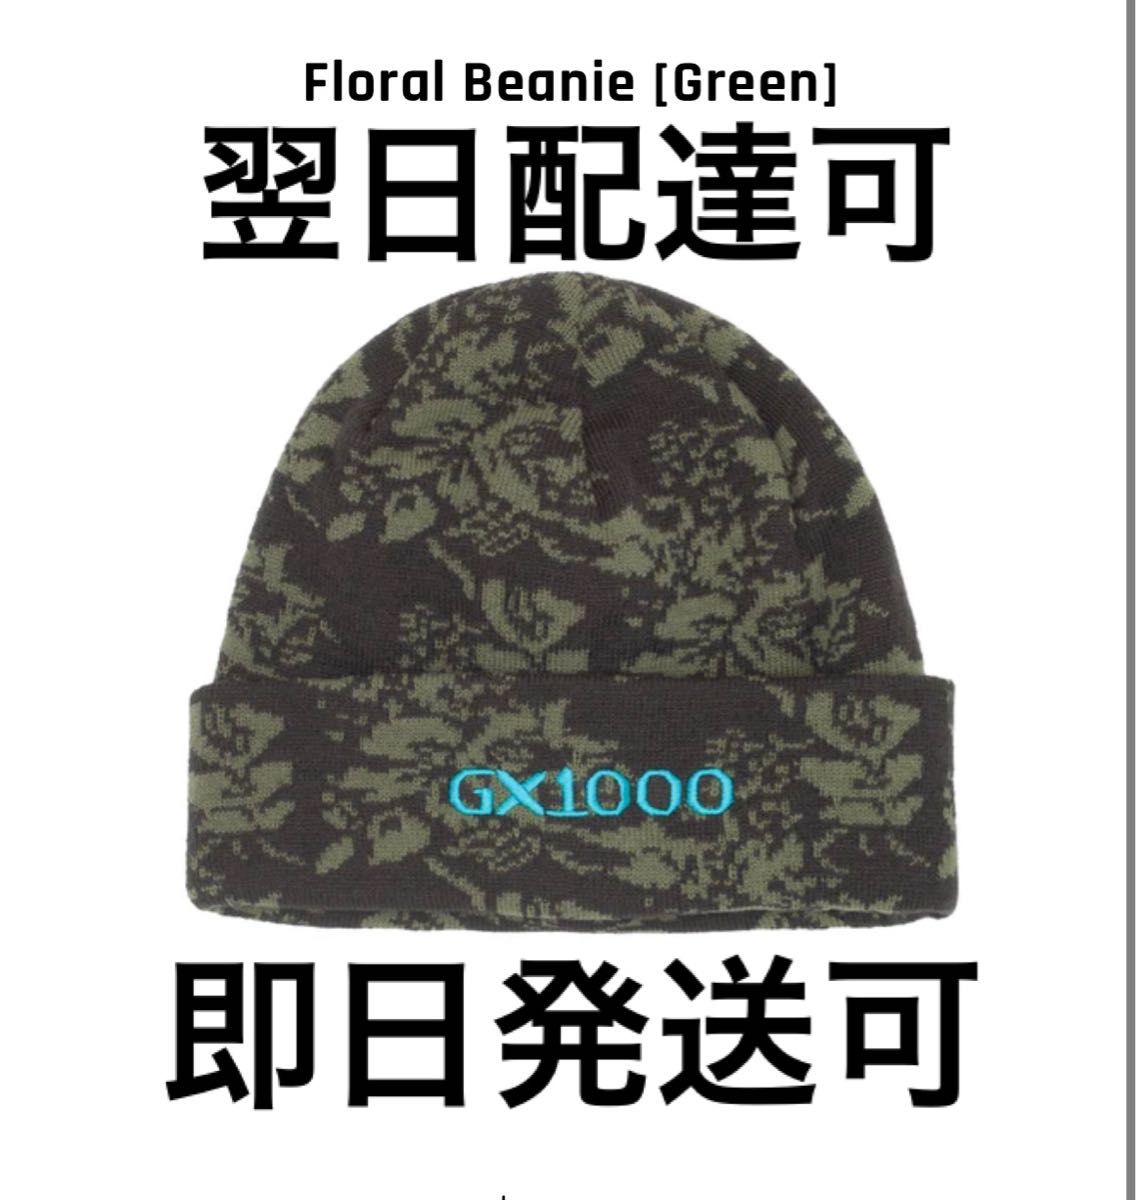 GX1000 Floral Beanie [Green]花柄 グリーン ビーニー - 帽子